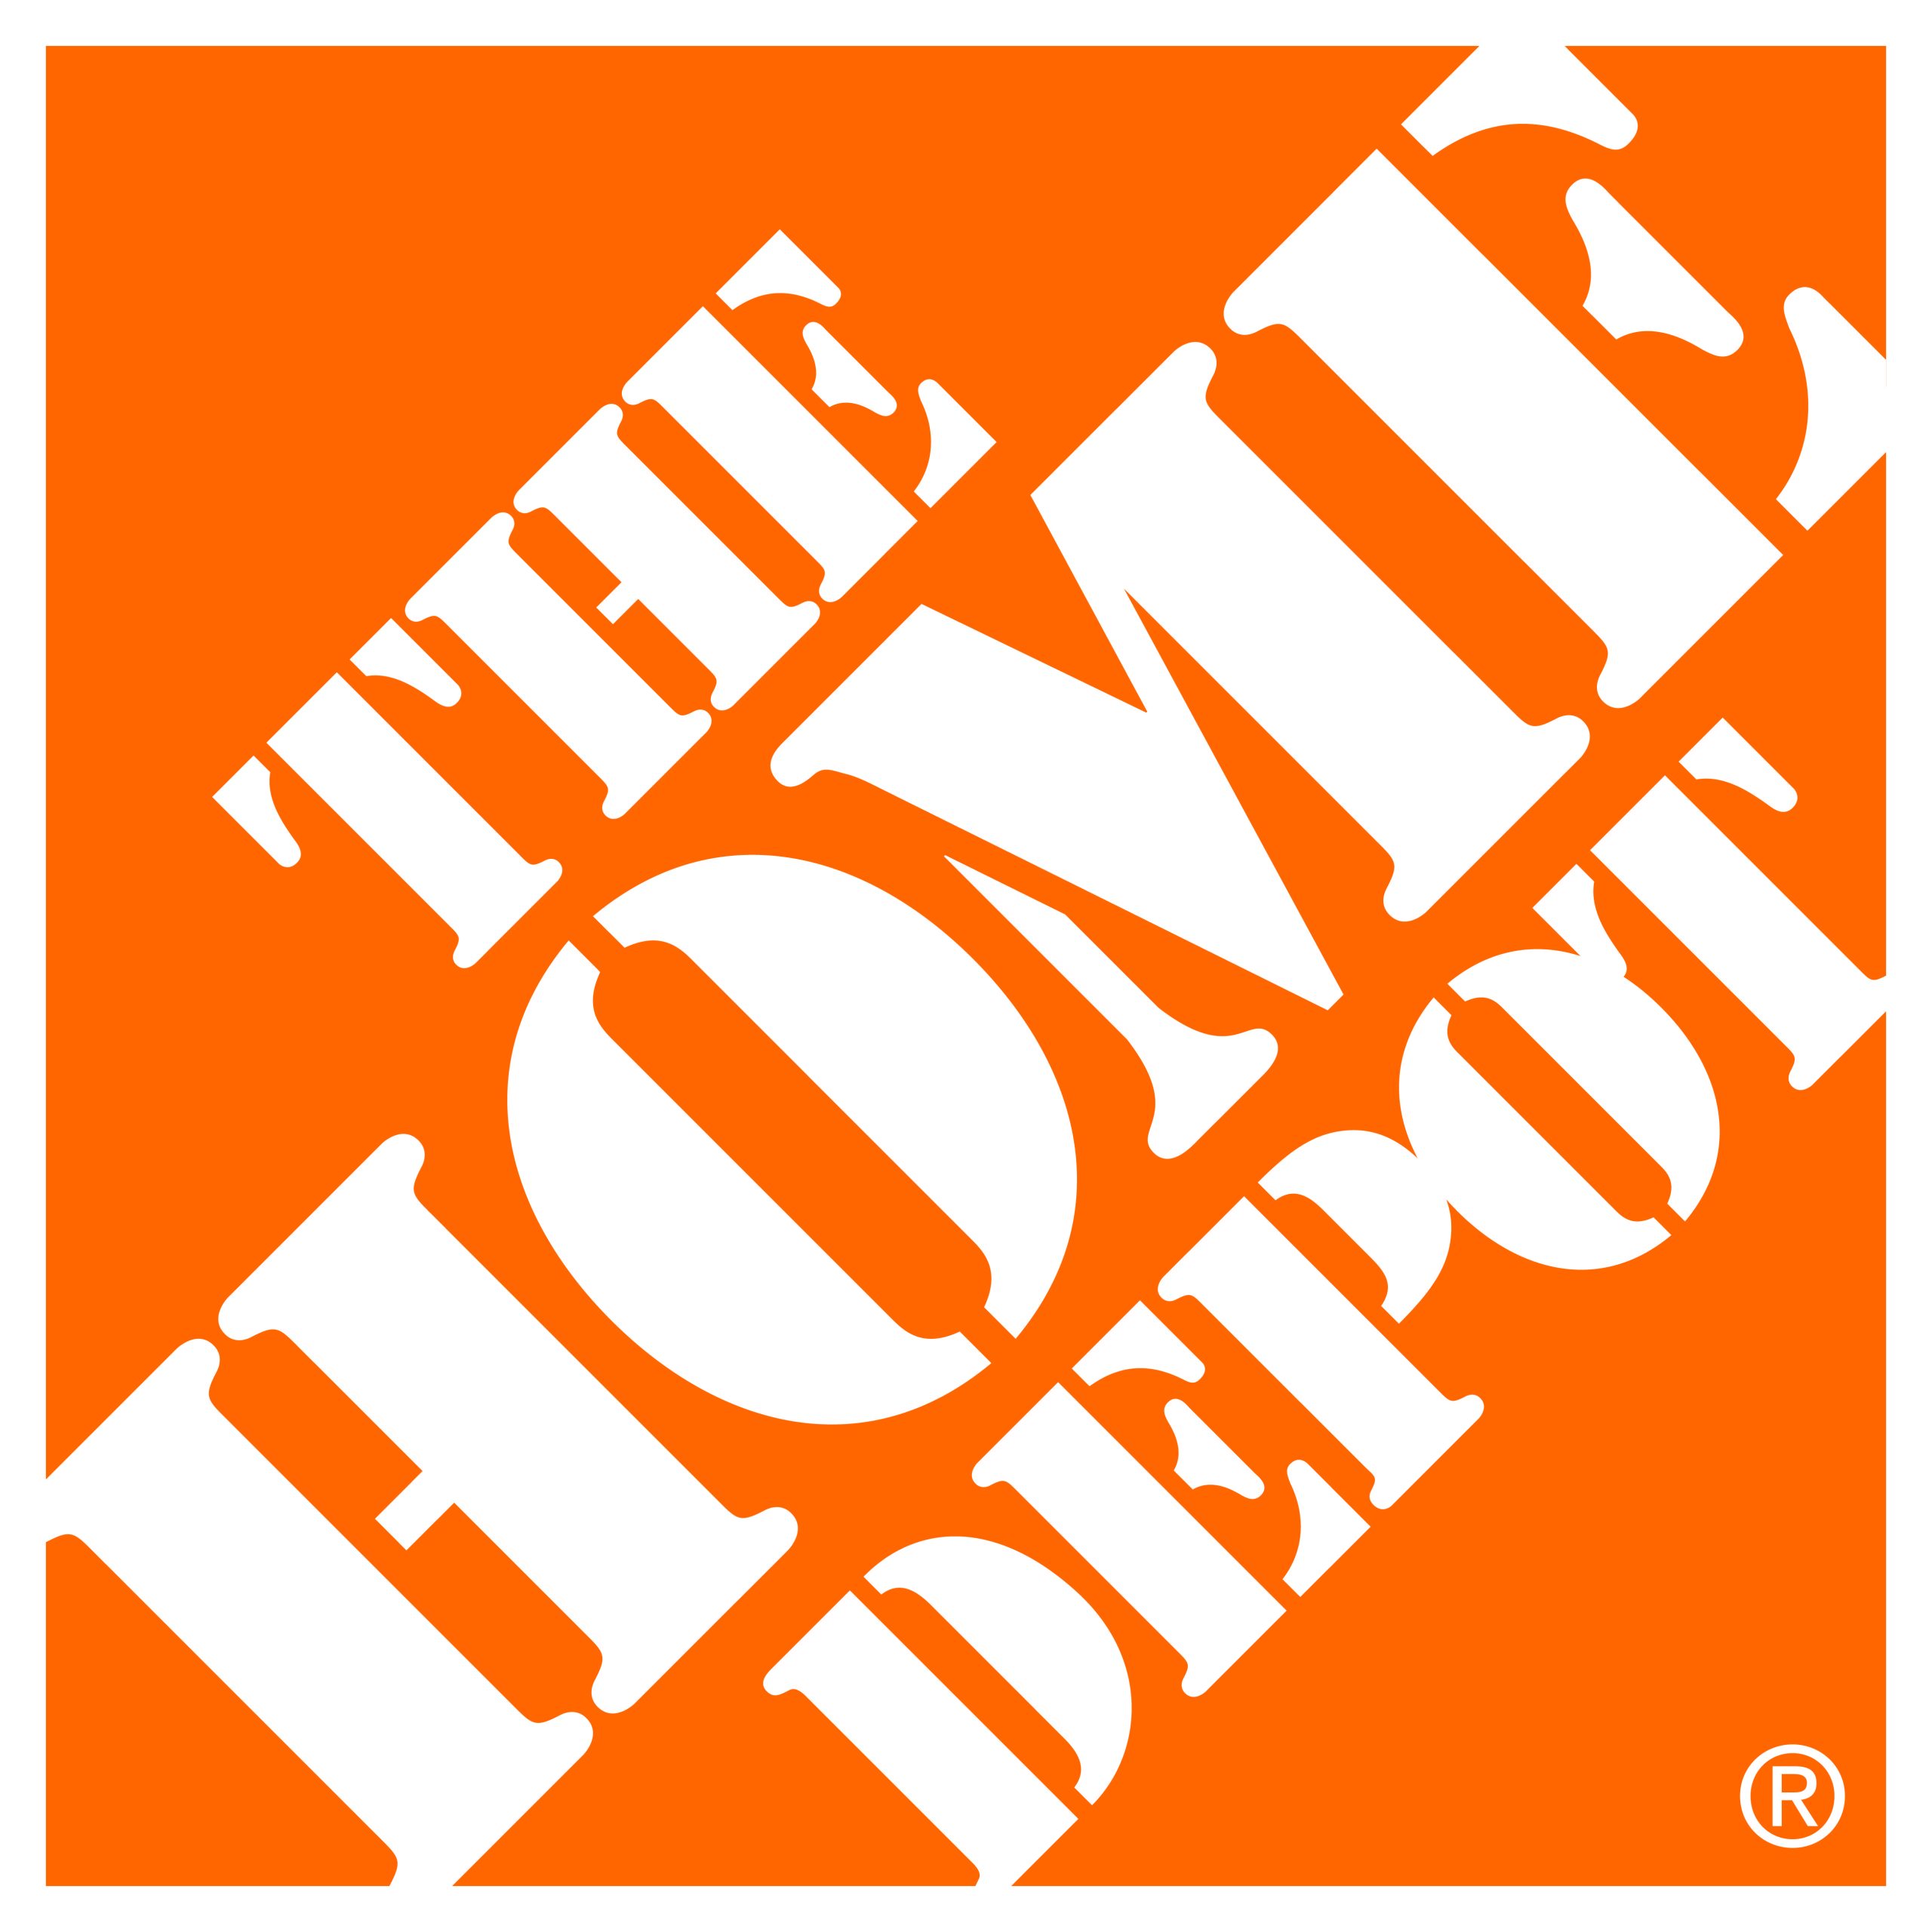 Home Depot-logo